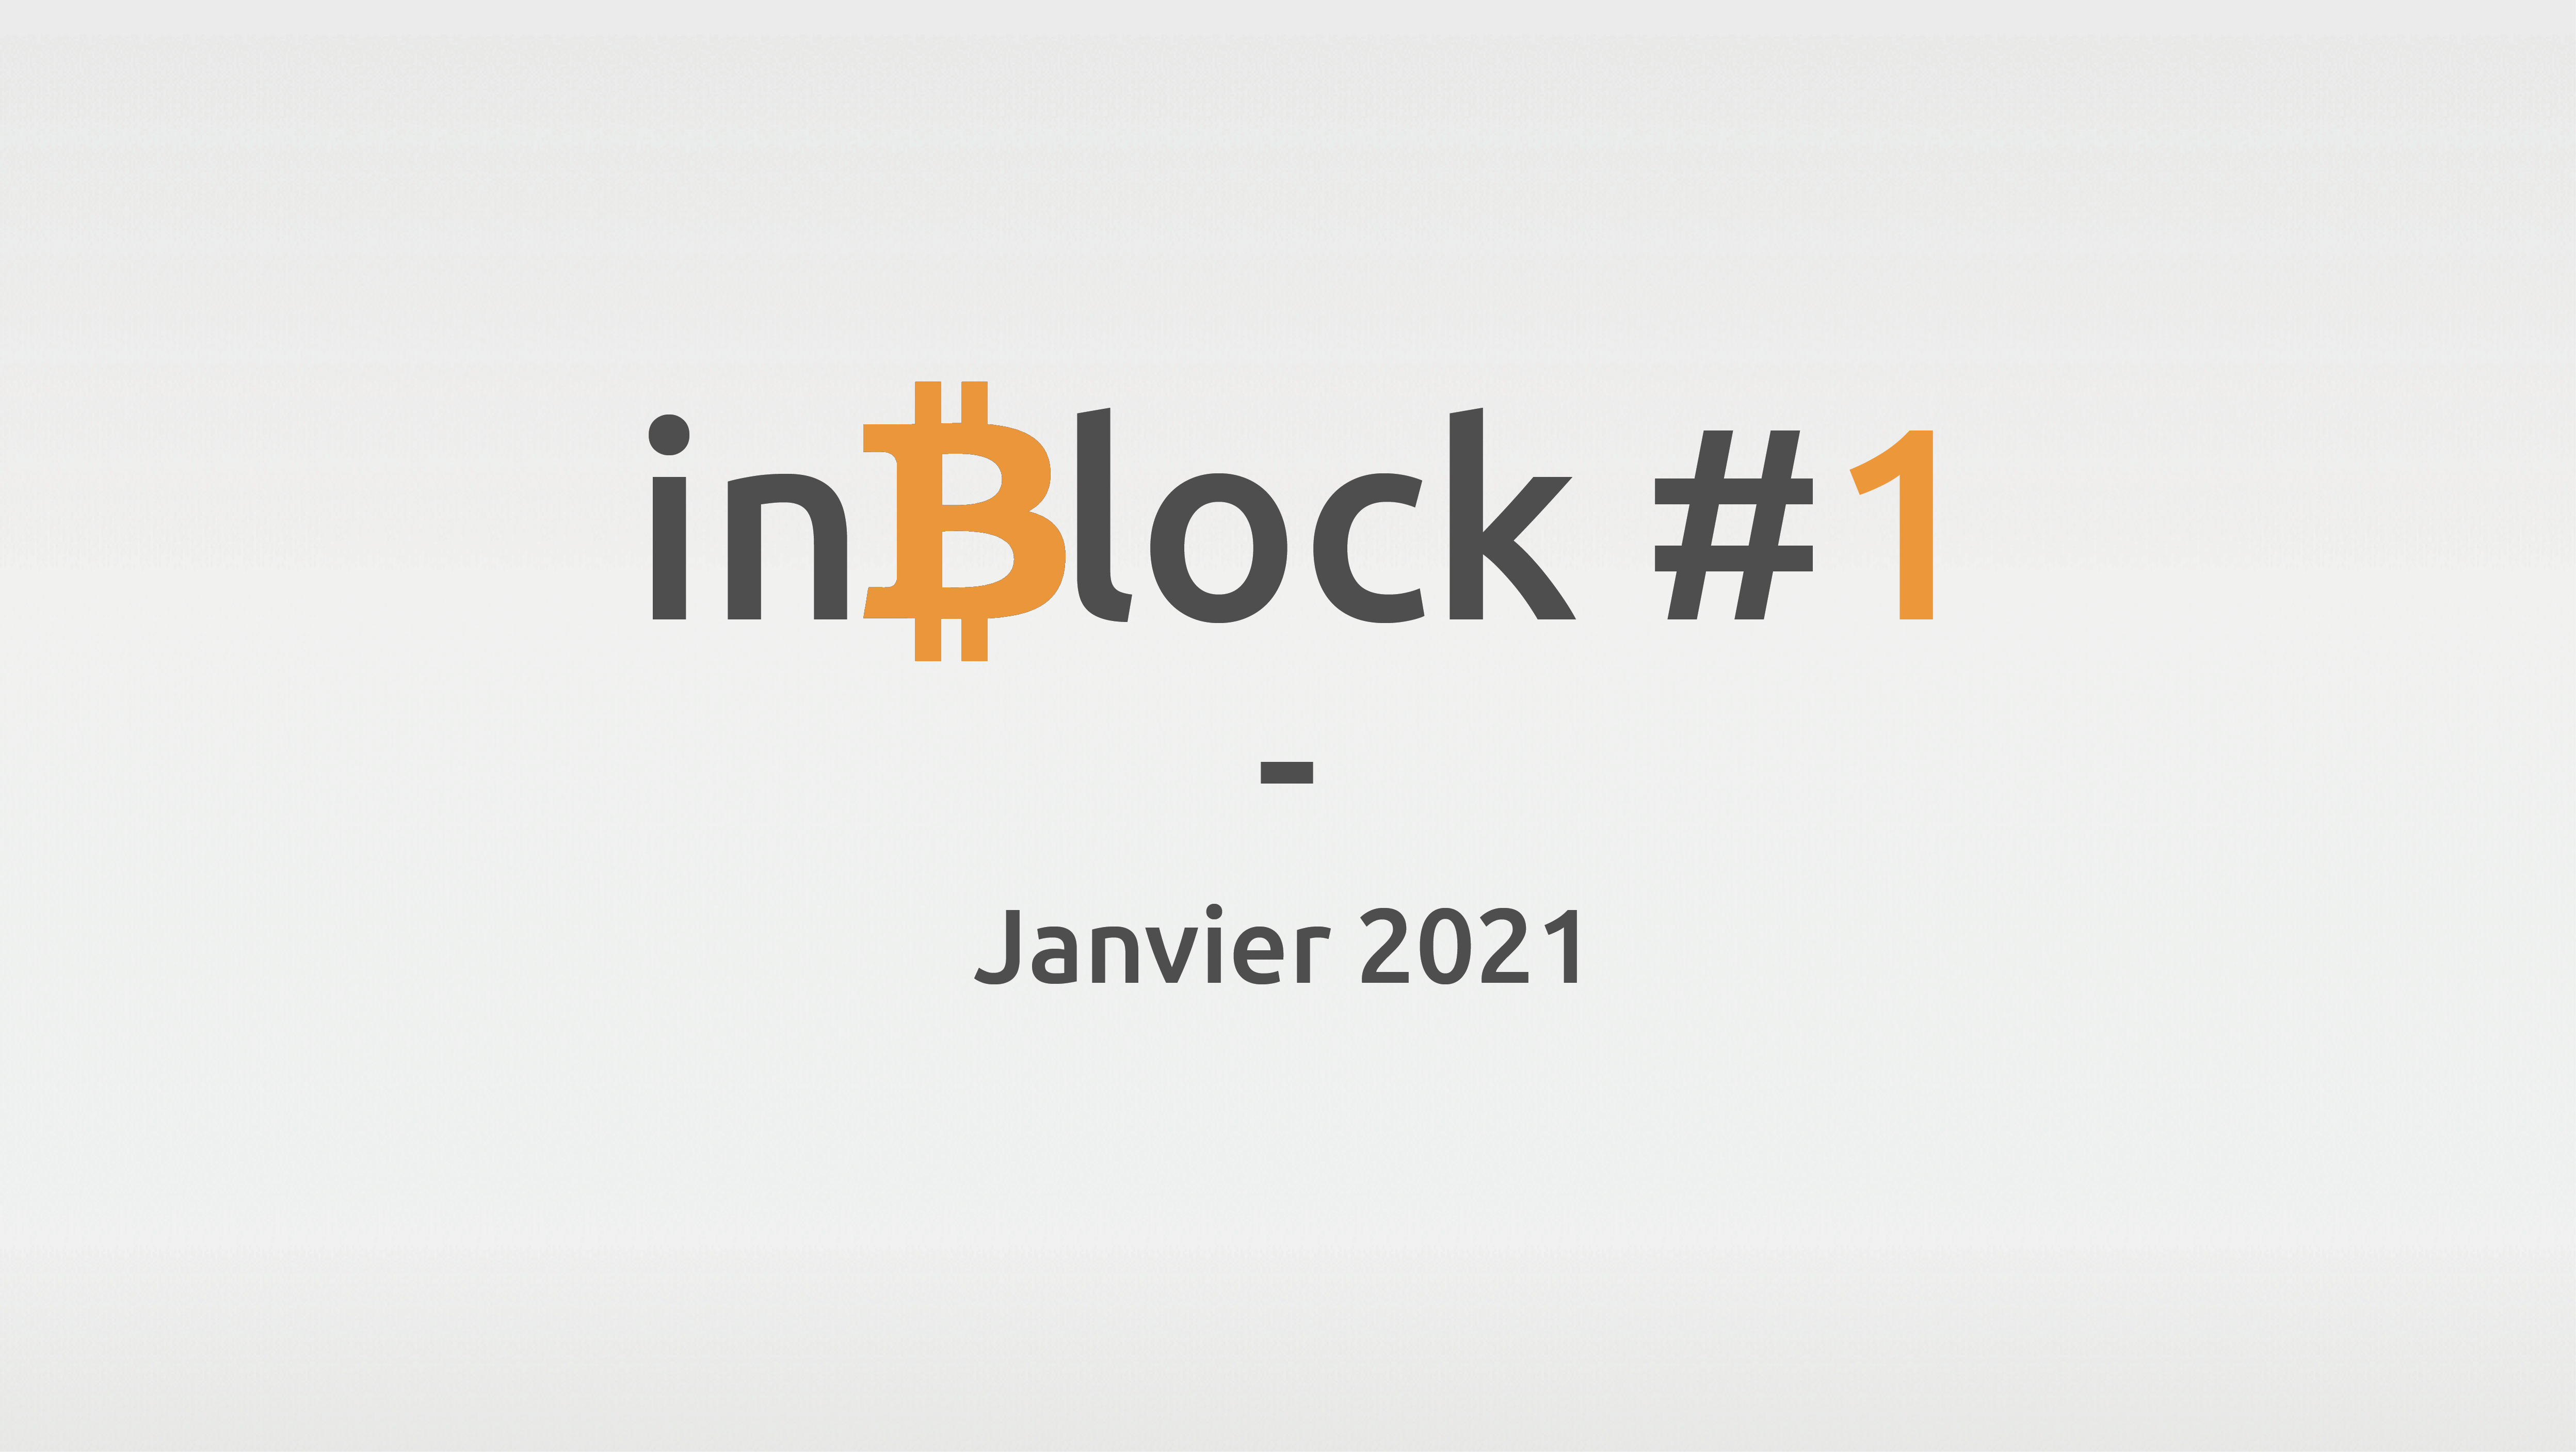 inBlock #1 : l'actualité Blockchain et Crypto de janvier 2021